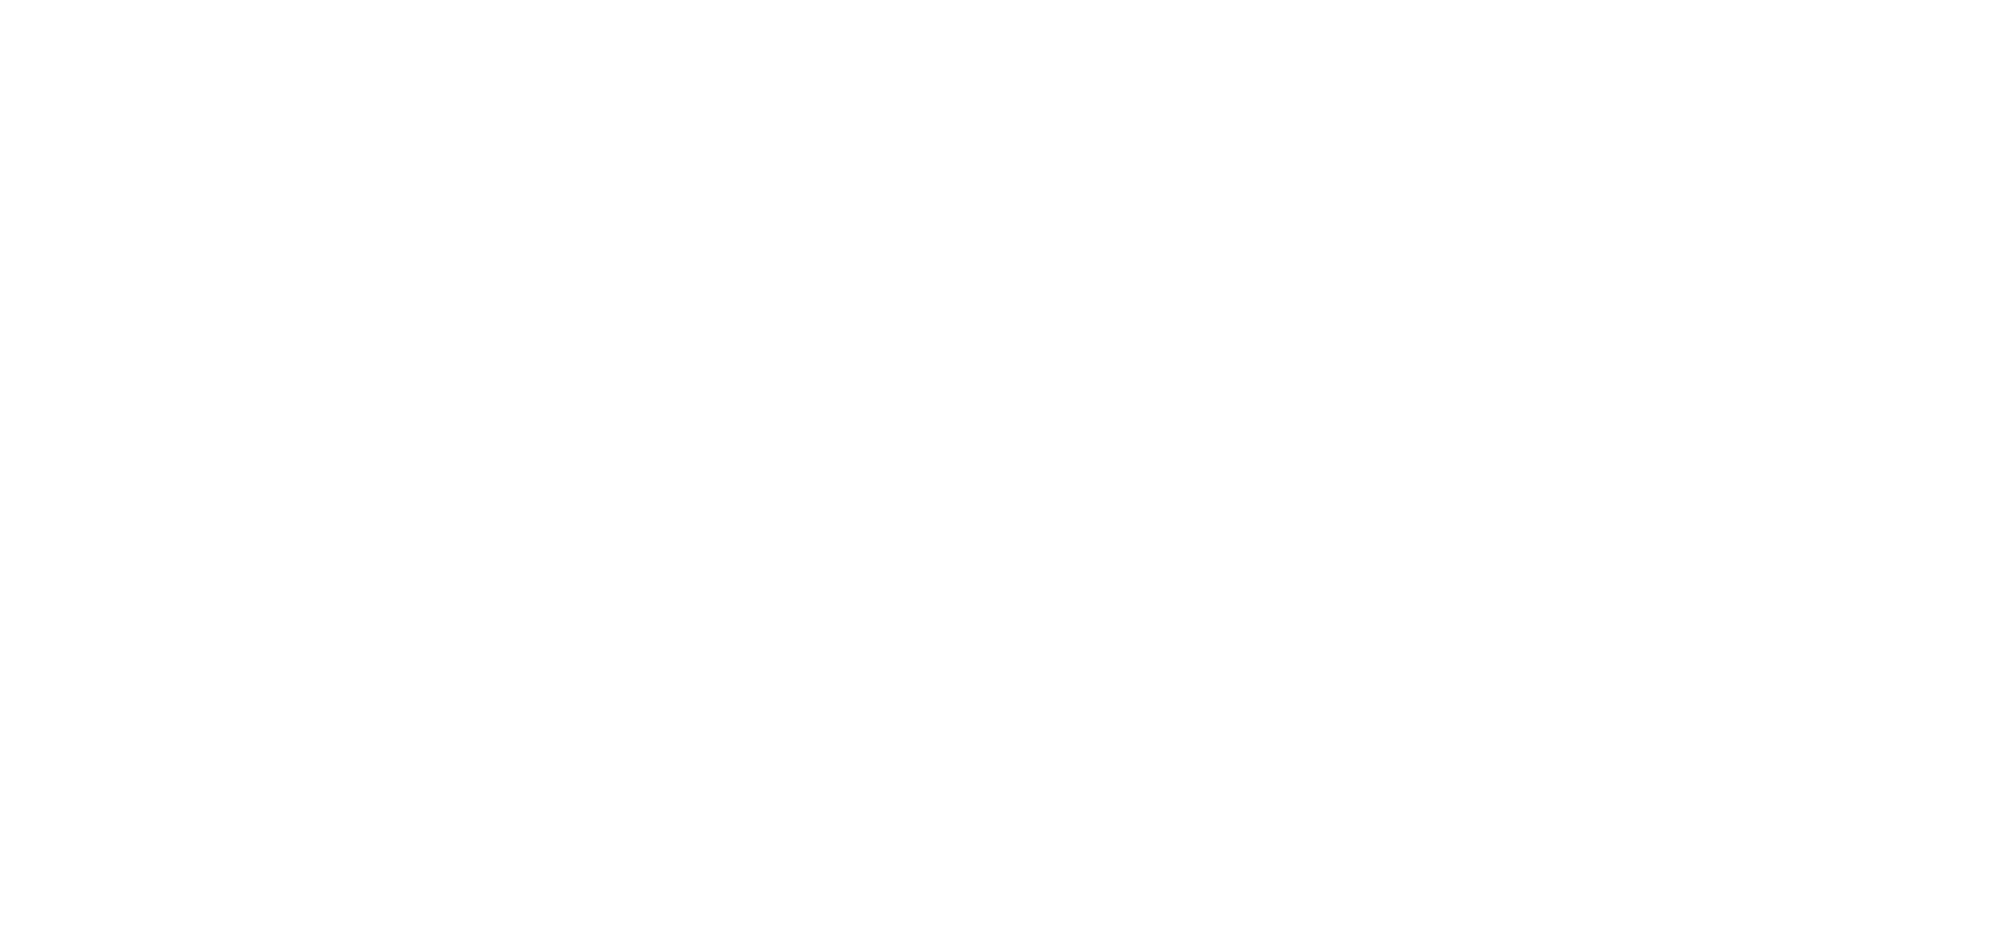 https://just-legends.gorgias.help/cdn-cgi/image/quality=100,width=3840/https://attachments.gorgias.help/vn01/hc/njp/logo_just_legends_white-9c77d6a1-6cb3-40d4-a553-3aaaa88a9ac9.png